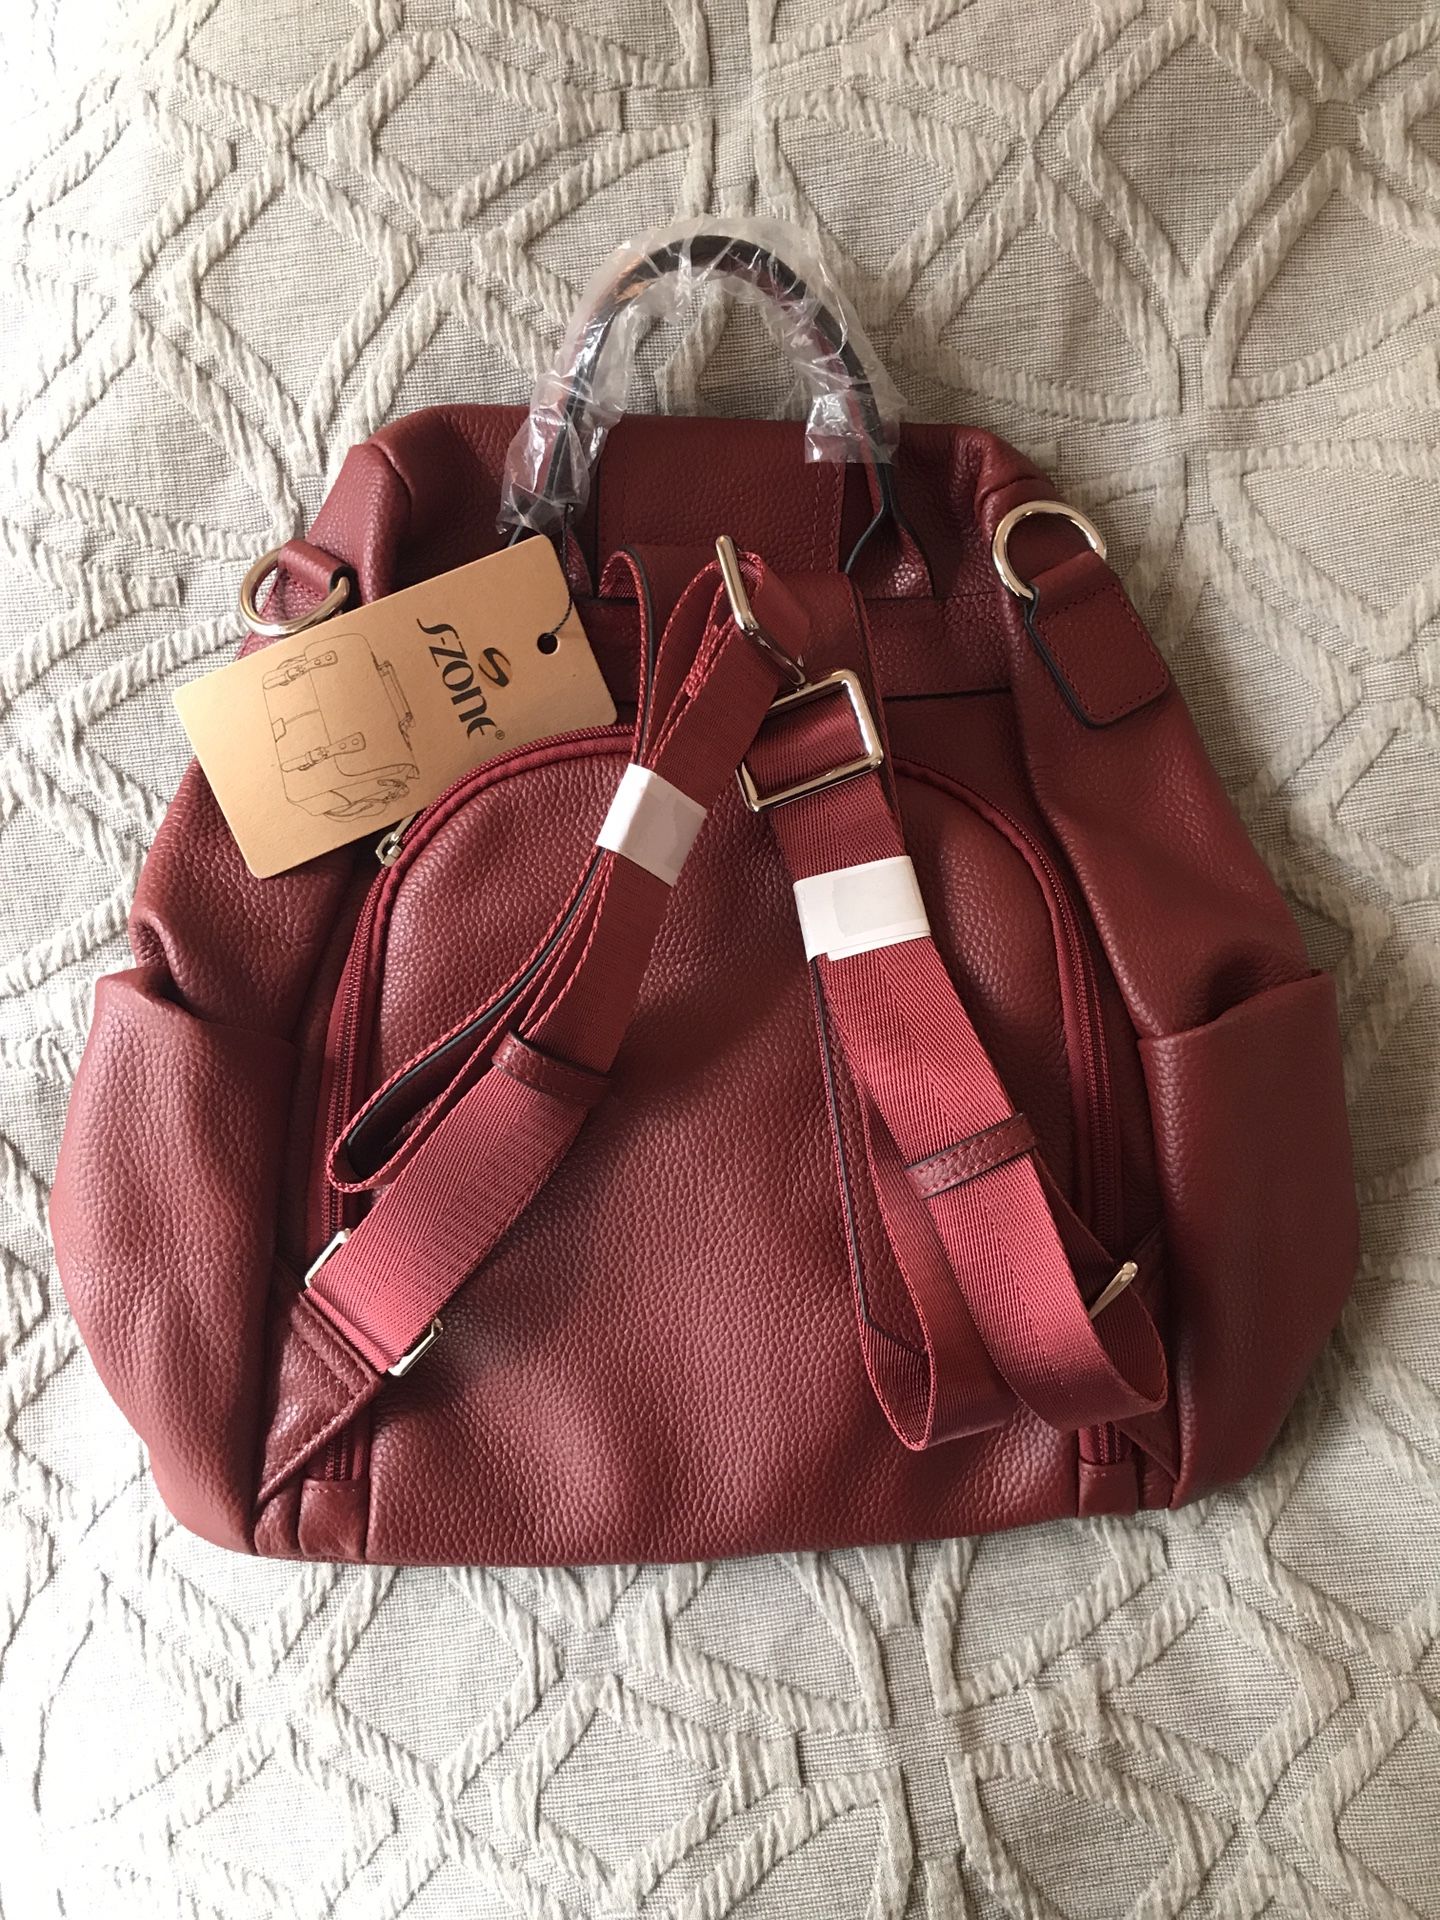 Red laptop bag/backpack